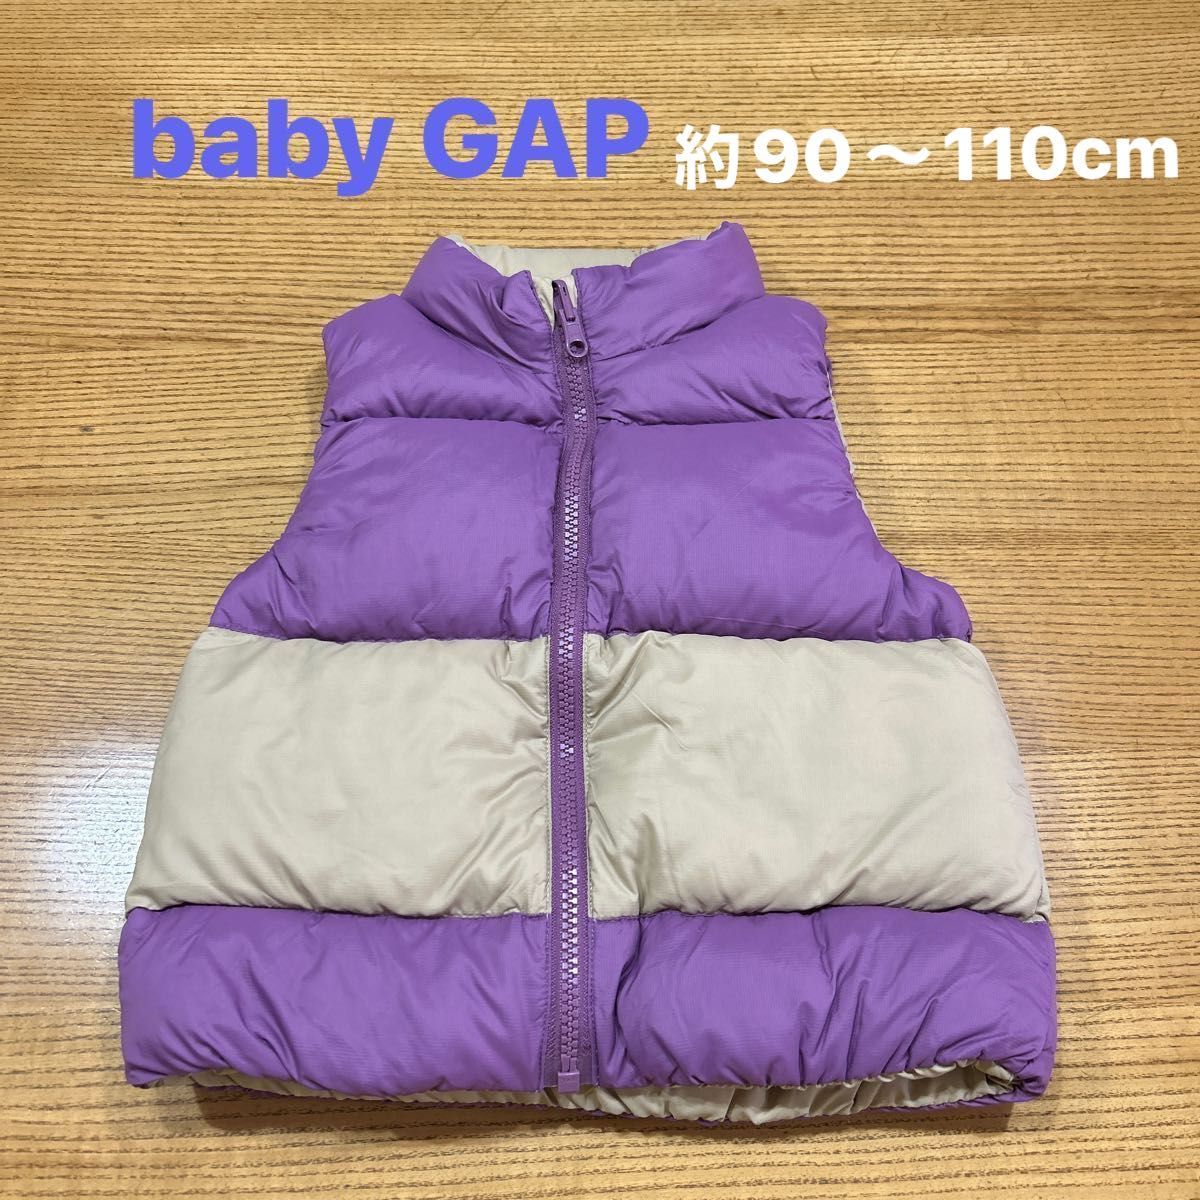 【baby GAP】(USED)ギャップ〈着用回数少なめ・美品〉リバーシブル ダウン&フェザーダウンベスト 約90〜110cm